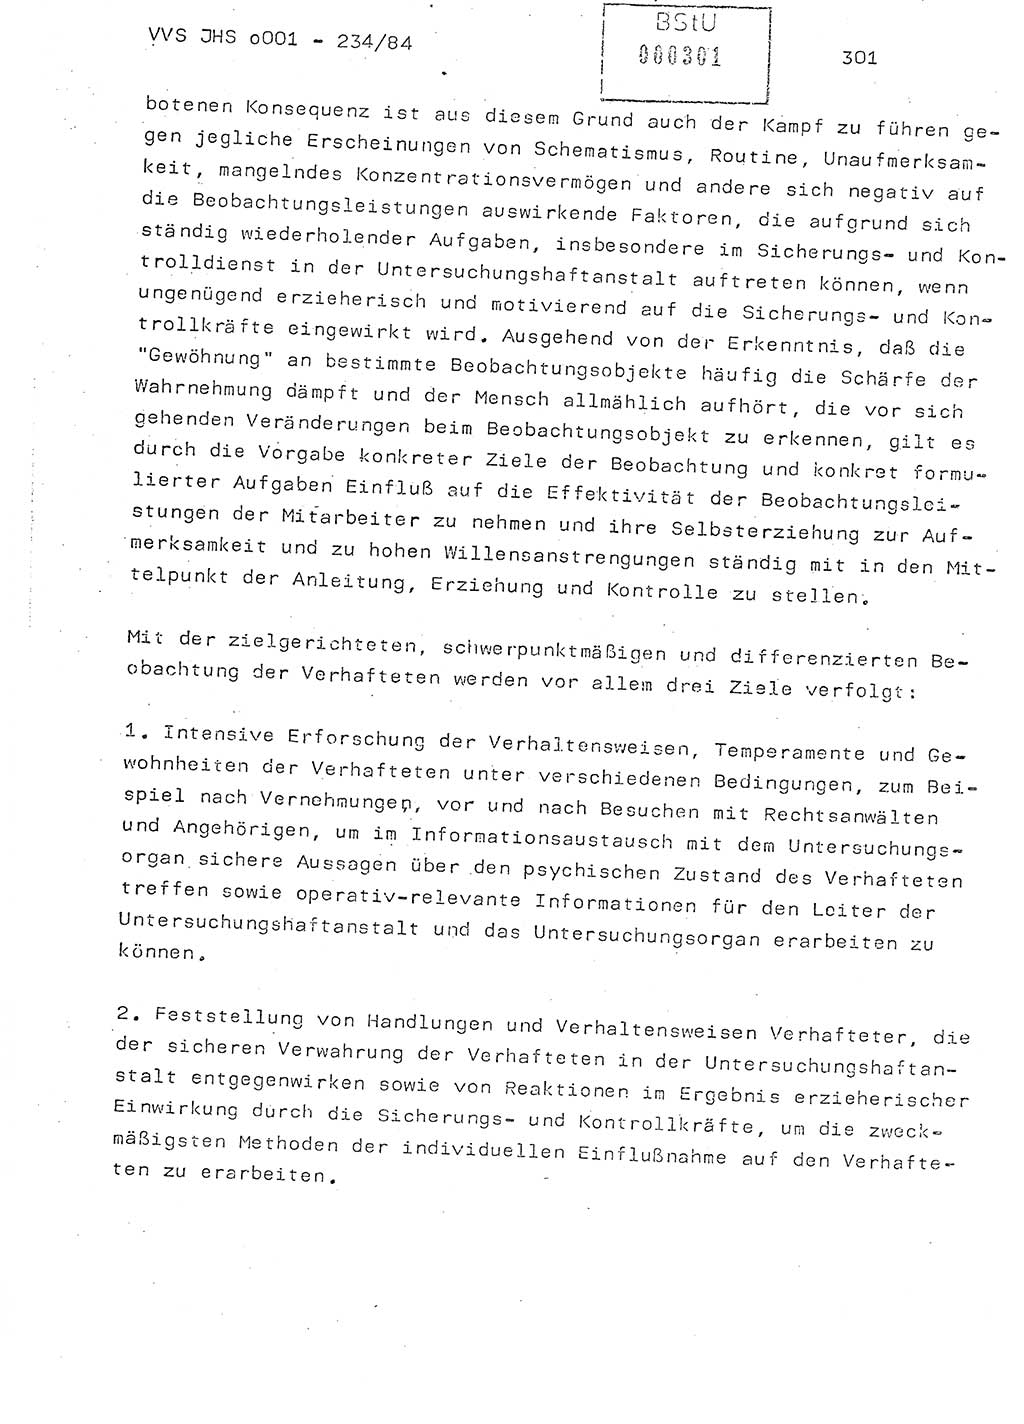 Dissertation Oberst Siegfried Rataizick (Abt. ⅩⅣ), Oberstleutnant Volkmar Heinz (Abt. ⅩⅣ), Oberstleutnant Werner Stein (HA Ⅸ), Hauptmann Heinz Conrad (JHS), Ministerium für Staatssicherheit (MfS) [Deutsche Demokratische Republik (DDR)], Juristische Hochschule (JHS), Vertrauliche Verschlußsache (VVS) o001-234/84, Potsdam 1984, Seite 301 (Diss. MfS DDR JHS VVS o001-234/84 1984, S. 301)